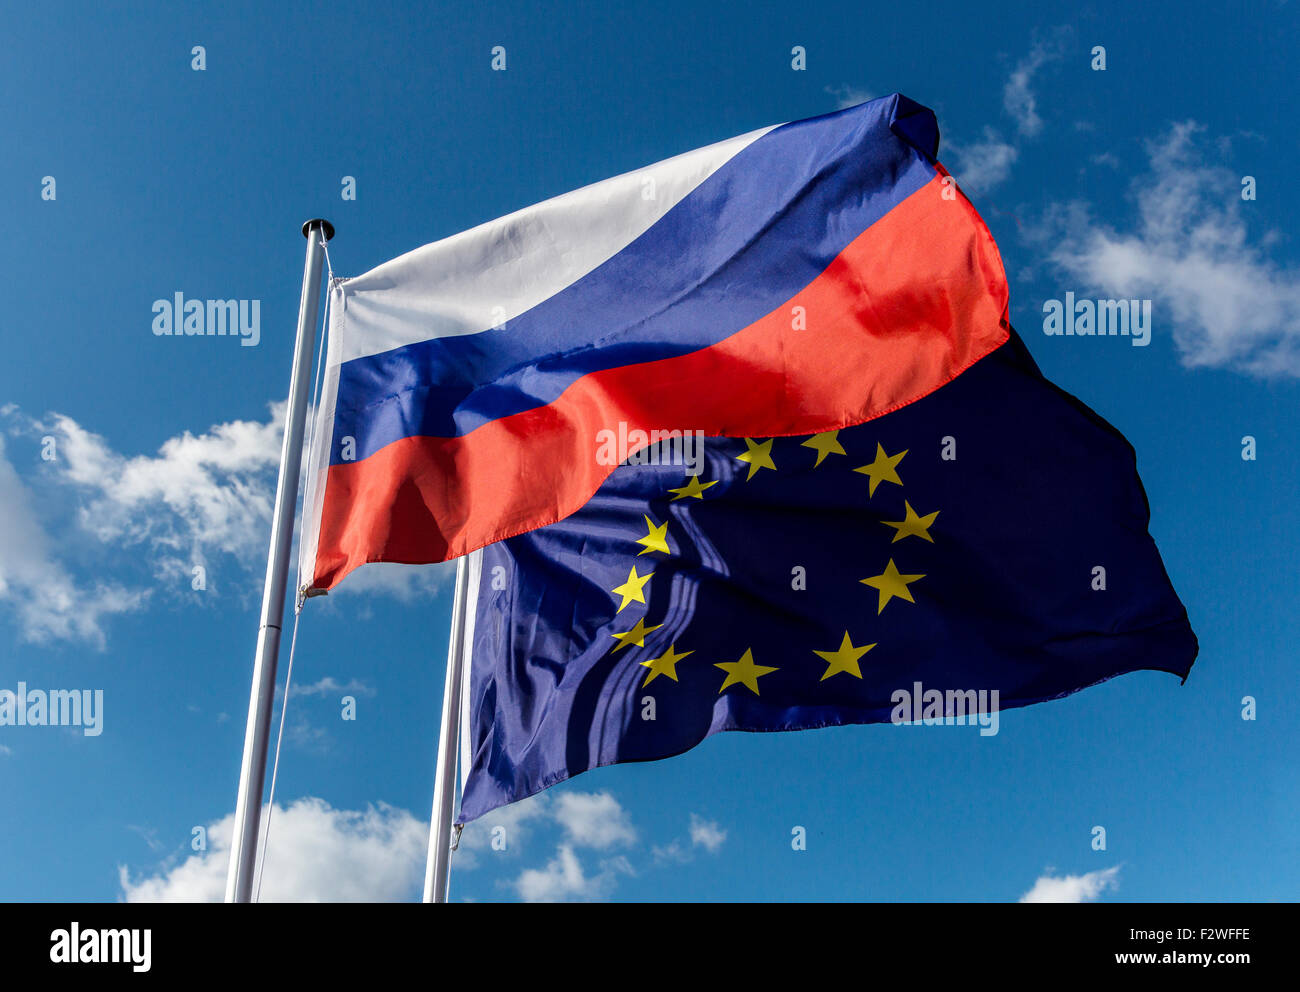 18.04.2015, Berlin, Berlin, Allemagne - Pavillon de Fédération de Russie et l'Union européenne d'un drapeau dans le vent. Banque D'Images